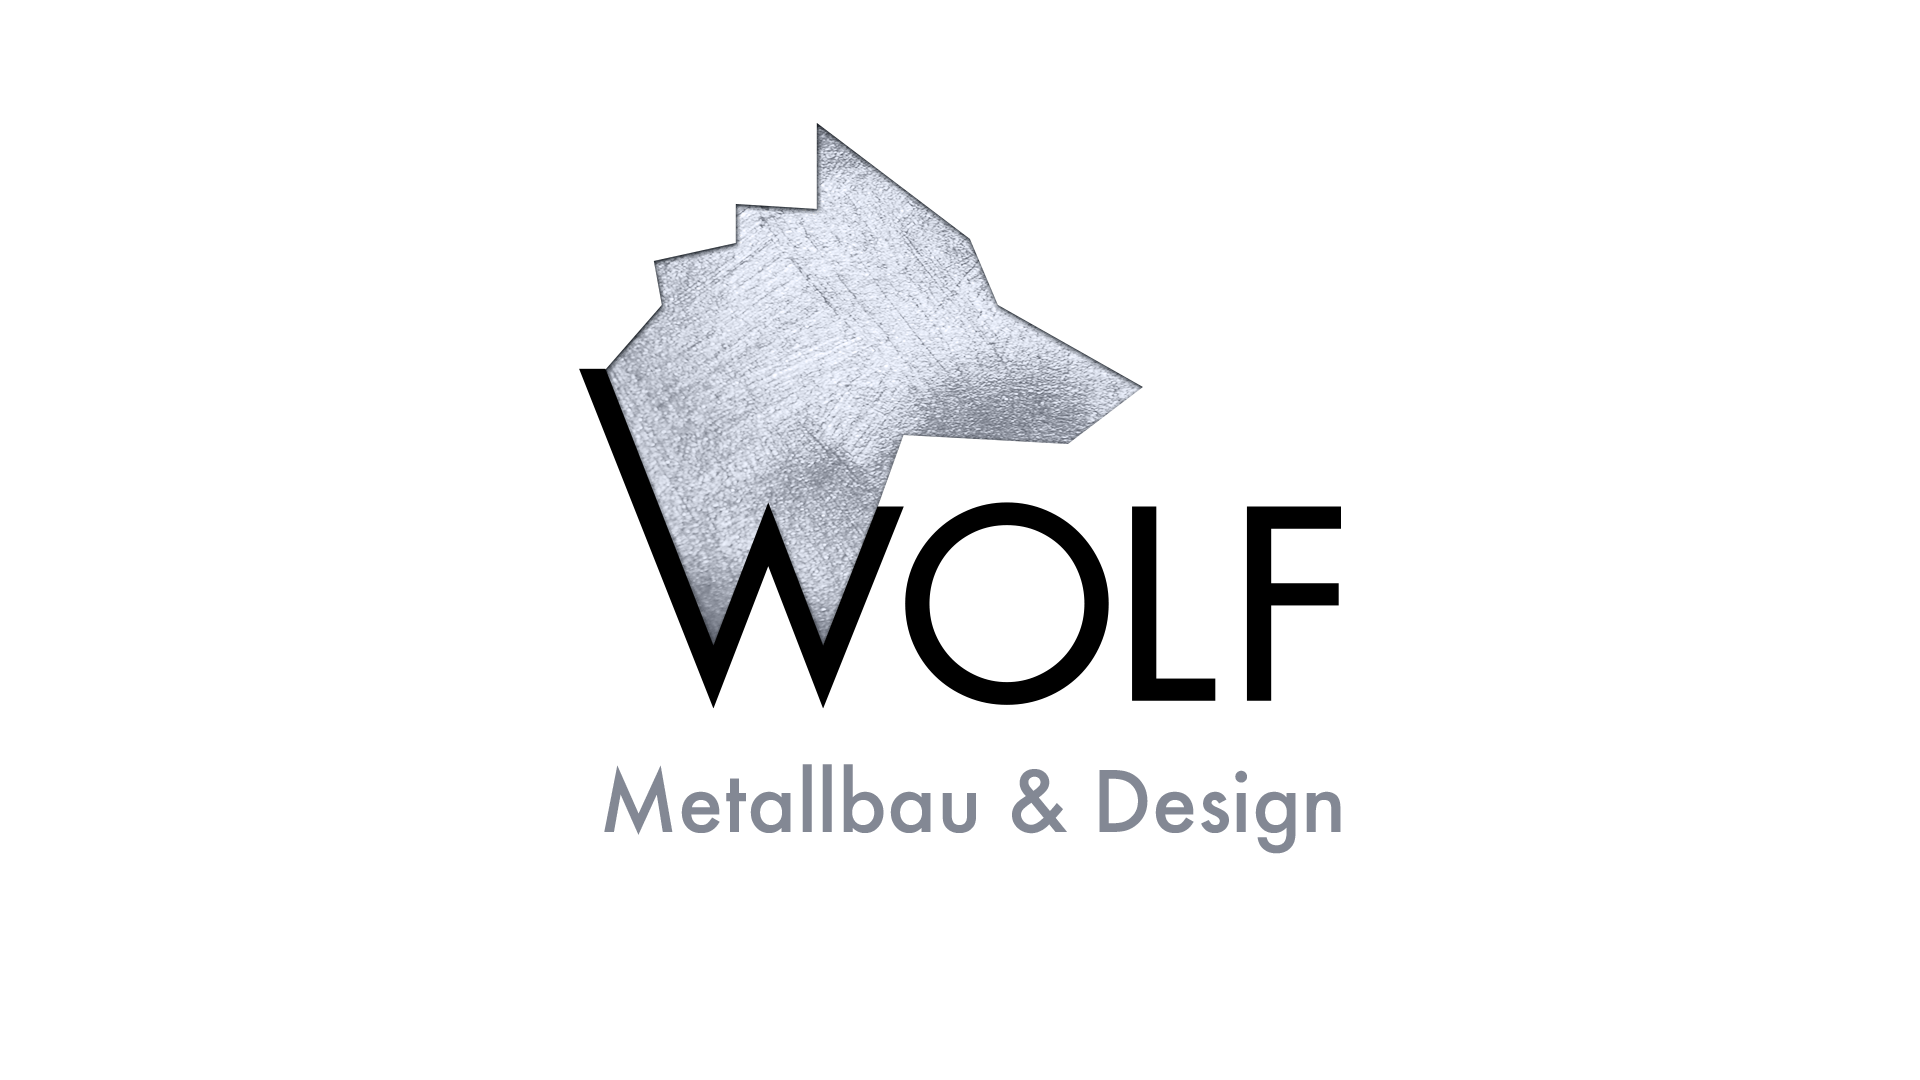 Logo_Wolf